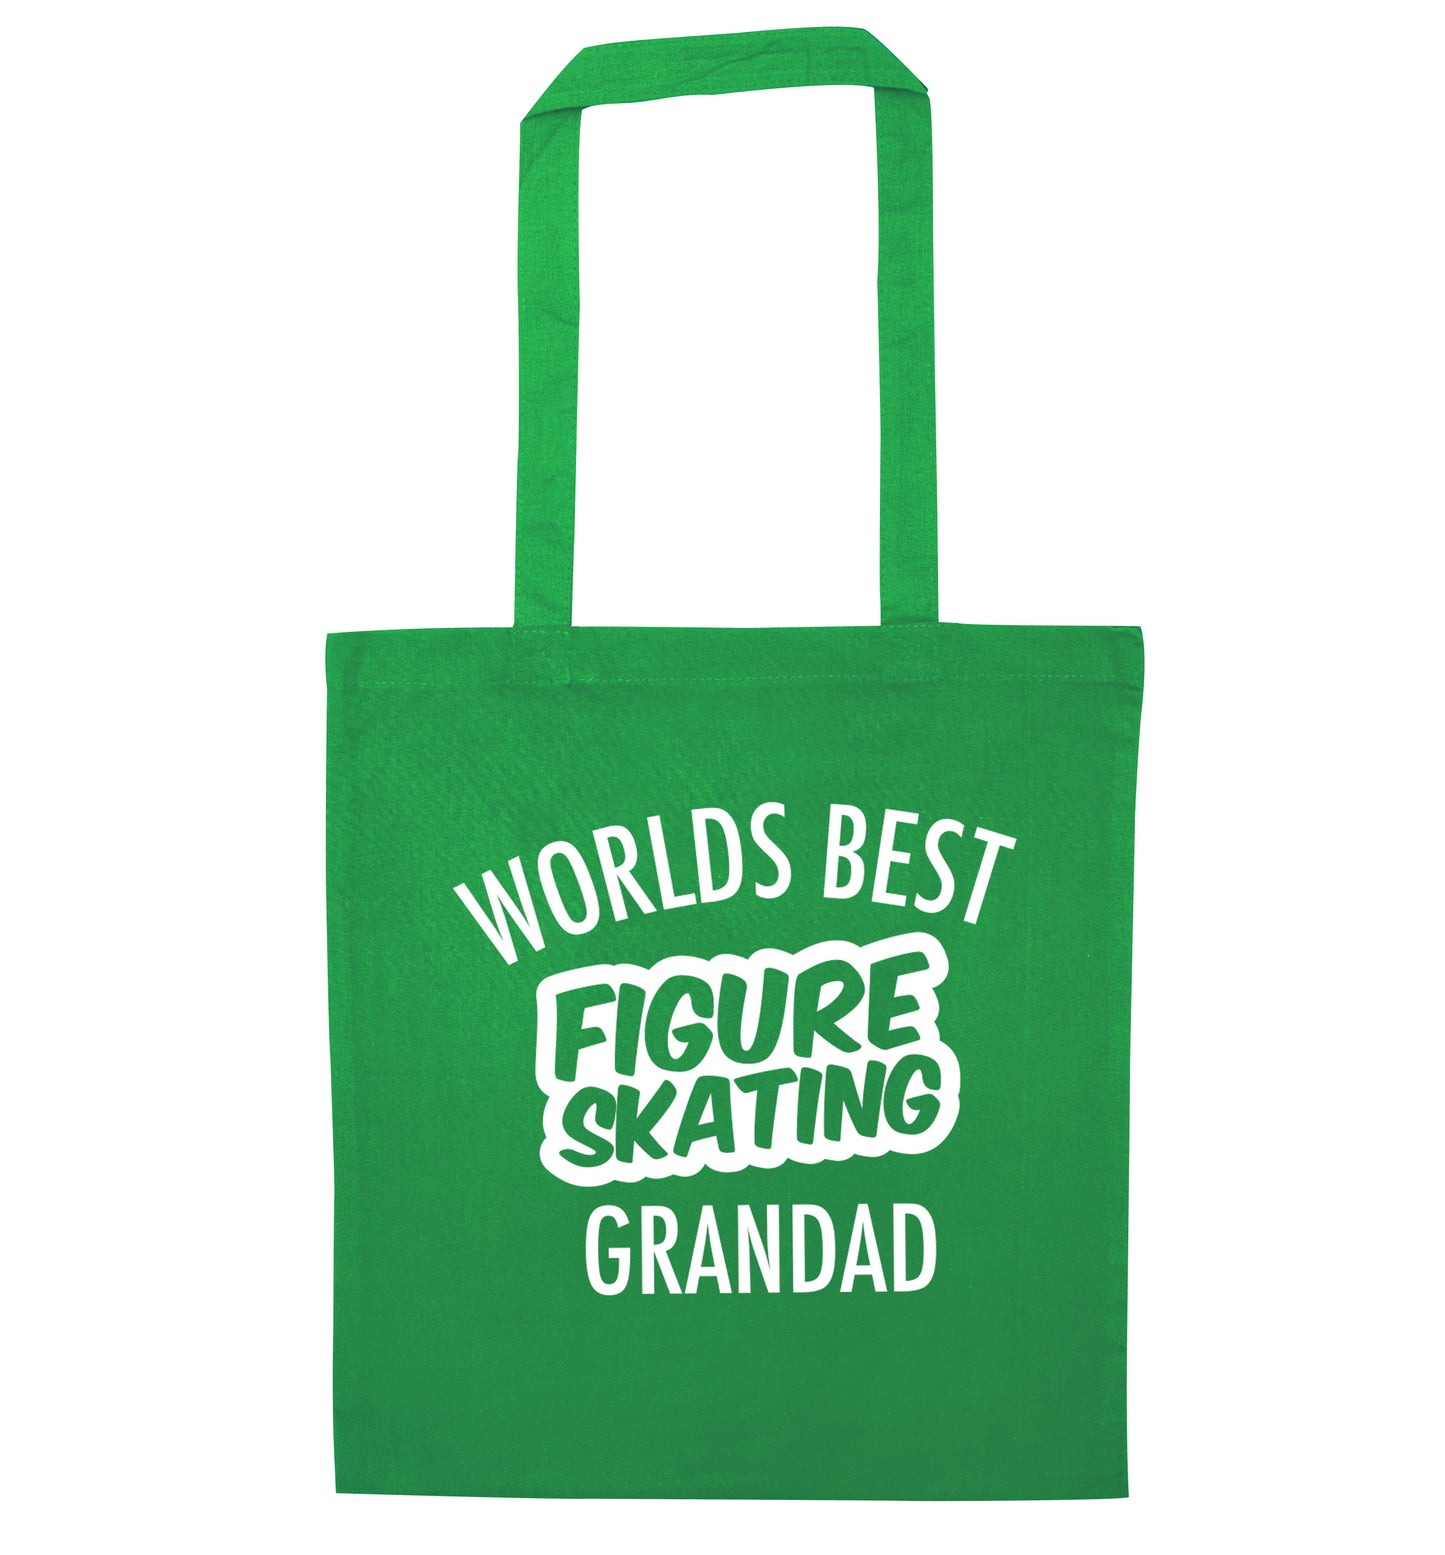 Worlds best figure skating grandad green tote bag